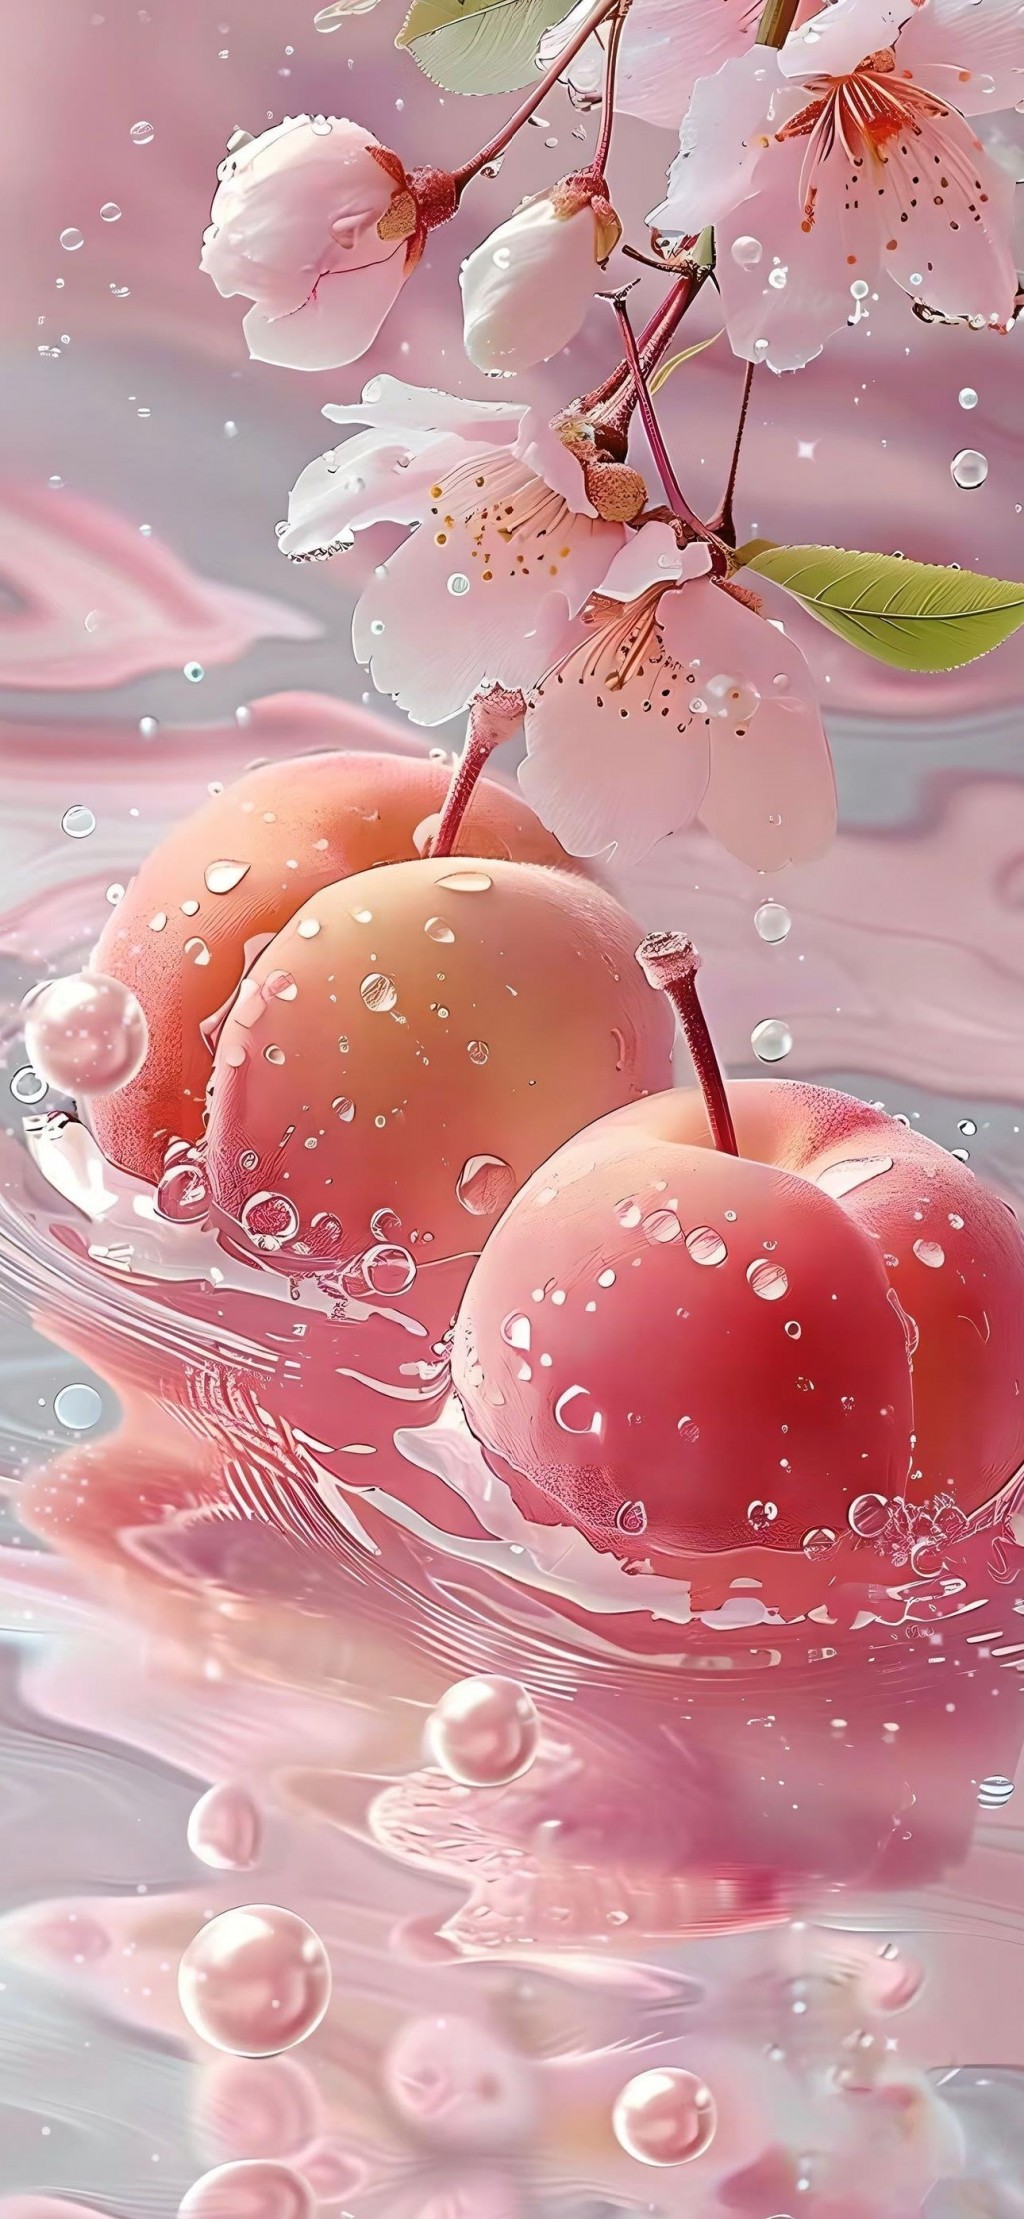 粉色水蜜桃水果摄影大片